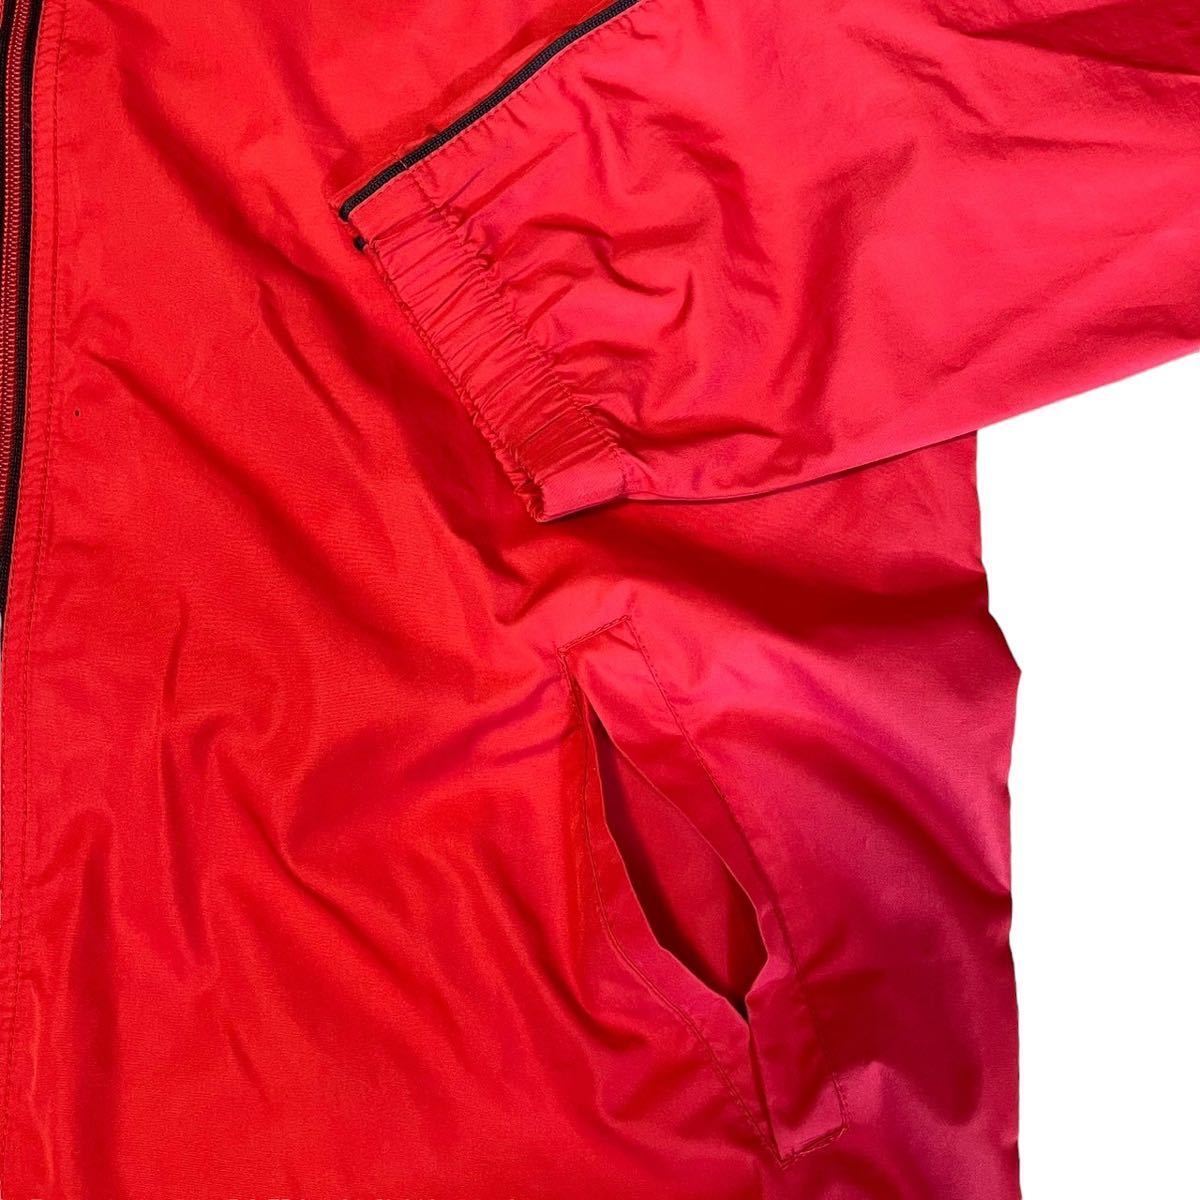 70s 80s 90s NIKE CLIMA-FIT back zip jacket ナイロンジャケット 赤 red ゴルフ フルジップ adidas アディダス ナイキ ジャンパー puma_画像5